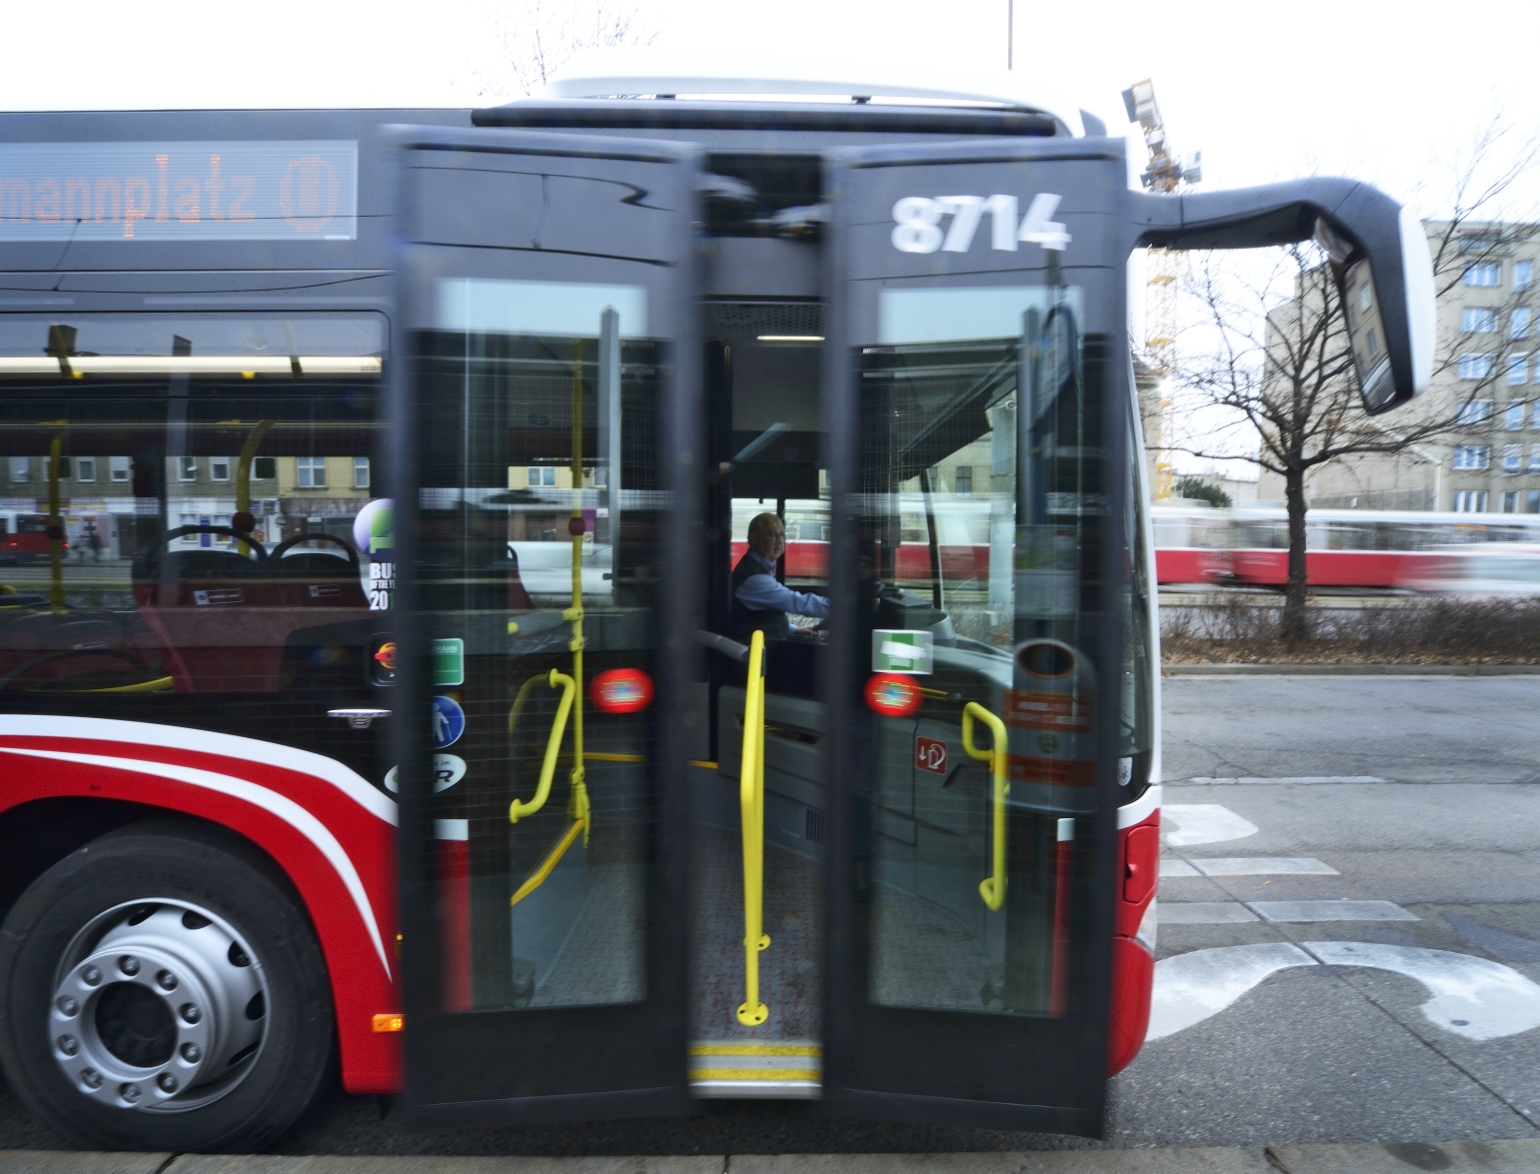 Ab 7. Jänner 2014 sind die neuen umweltfreundlichen CITARO Gelenksbusse des Herstellers Mercedes-Benz im Einsatz, im Bild auf der Linie 7A.